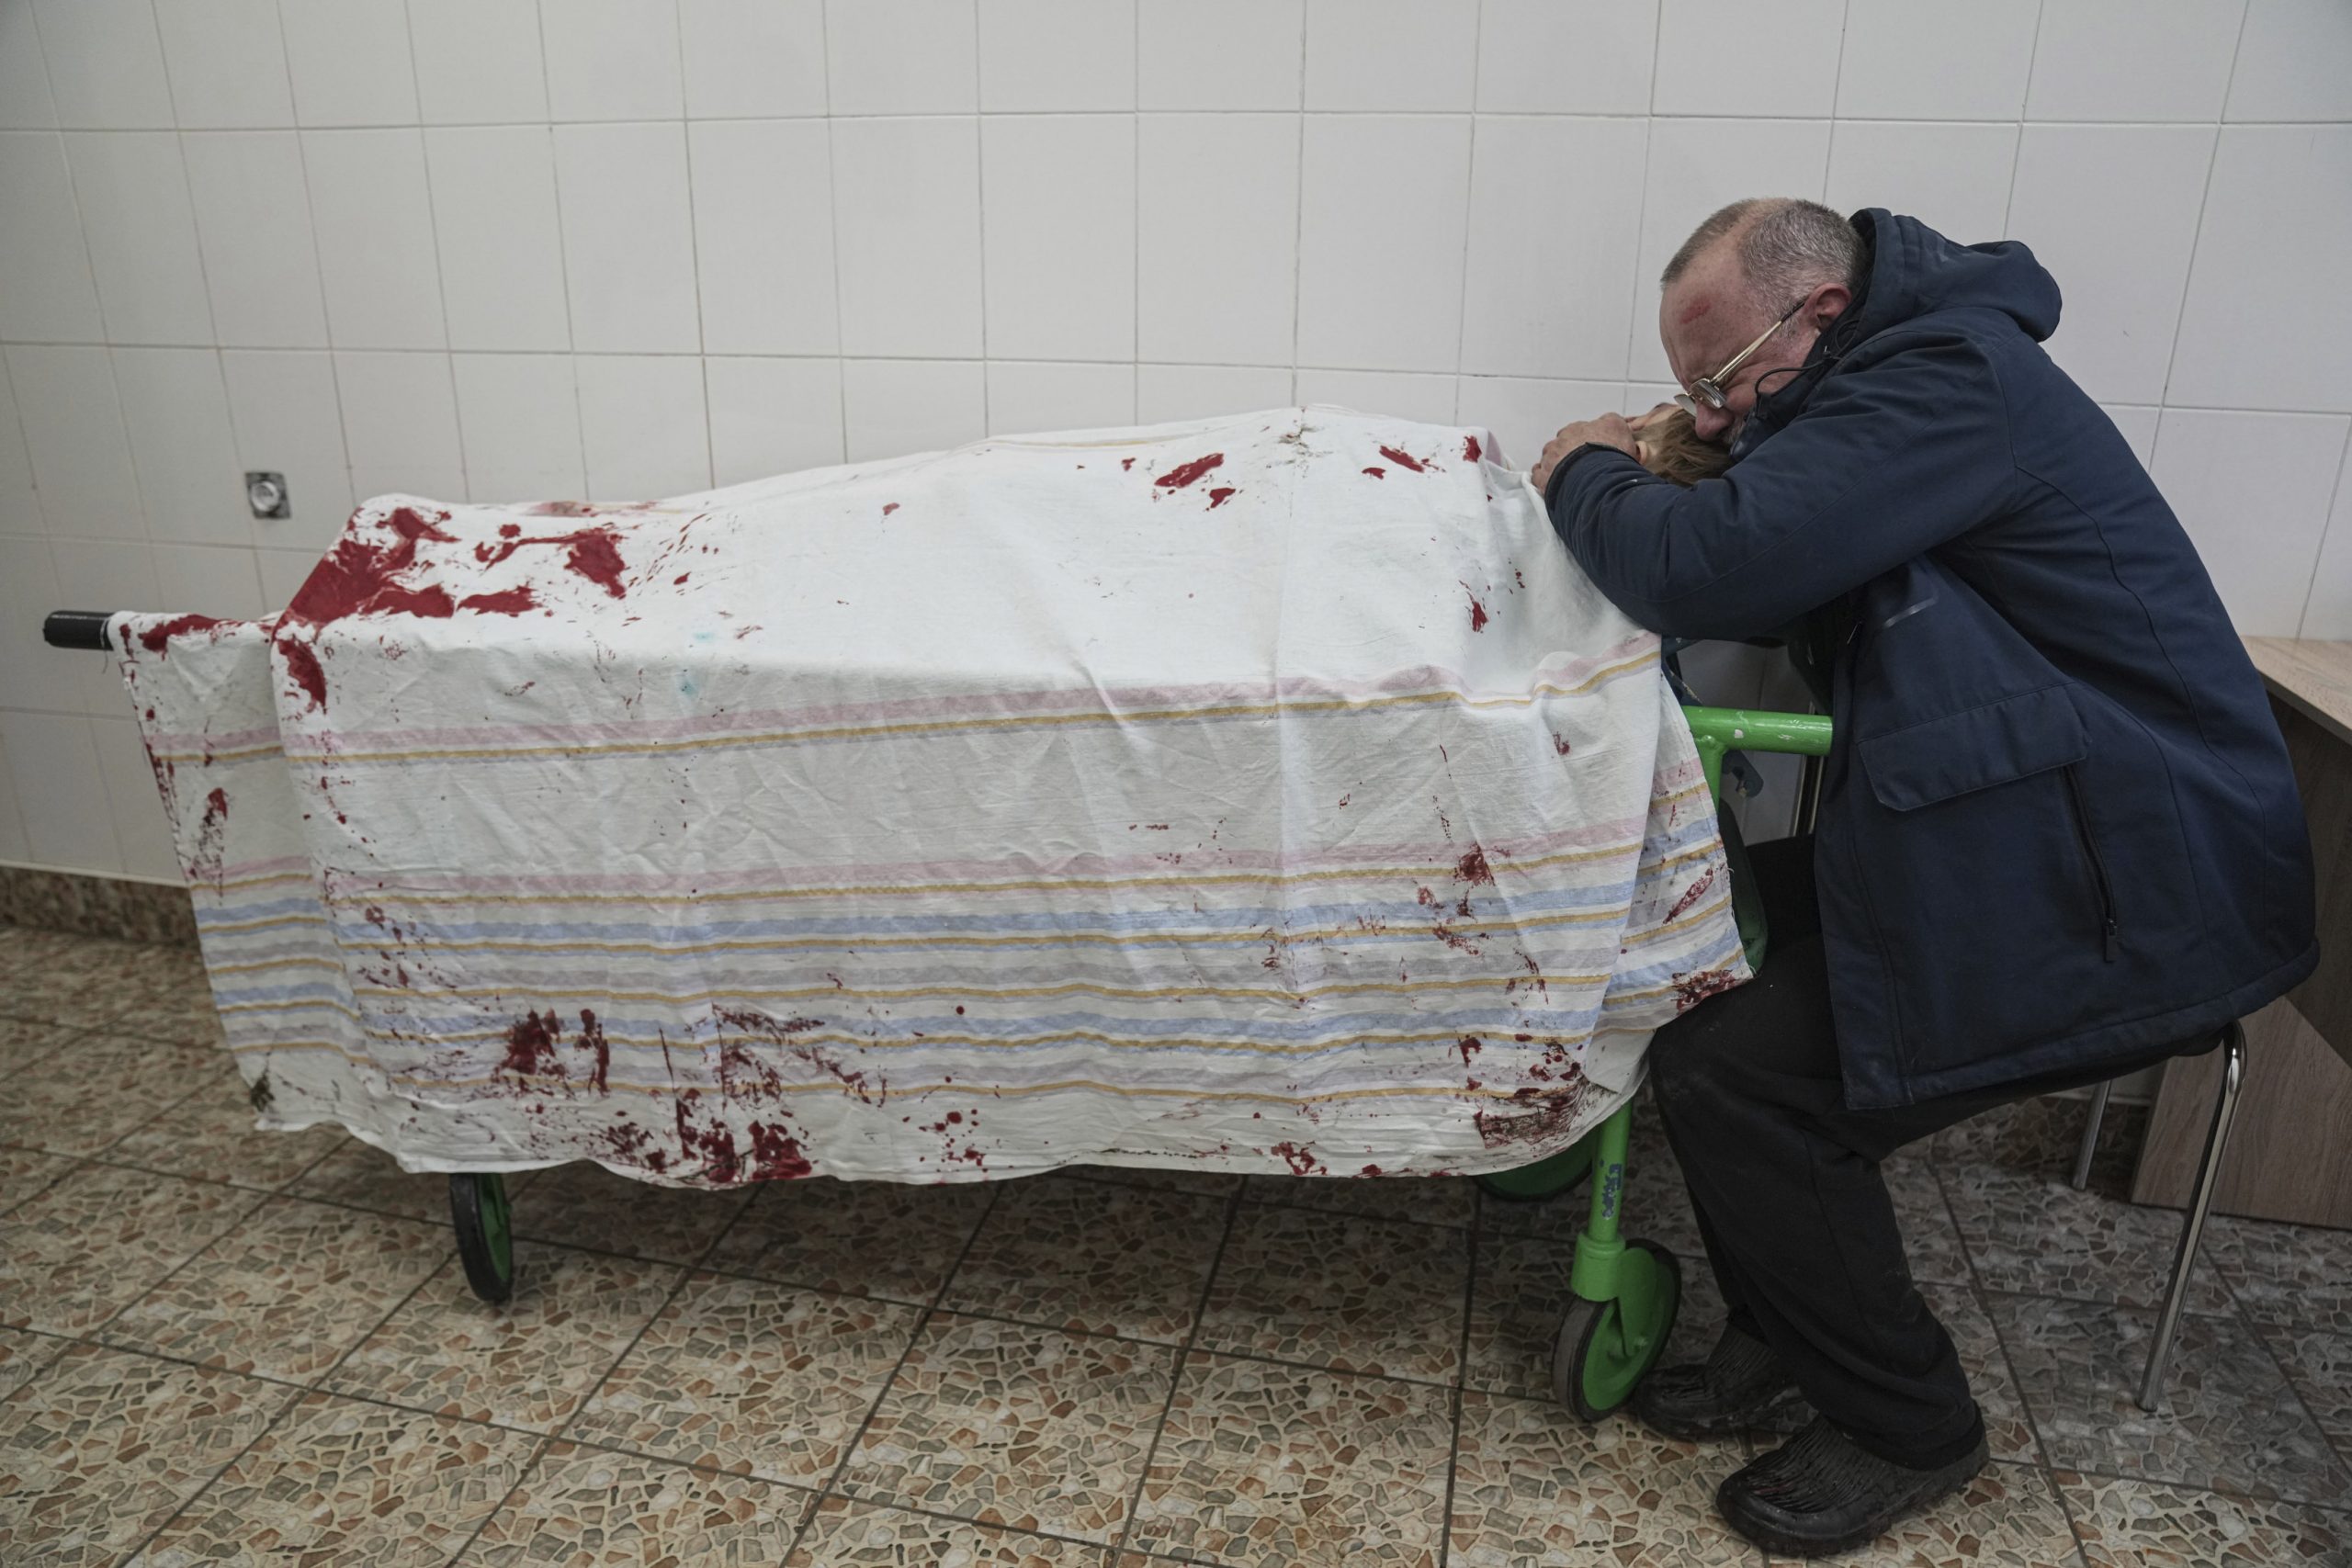 马里乌波尔市围城24小时惨况曝光 少年被炸死父抱遗体痛哭